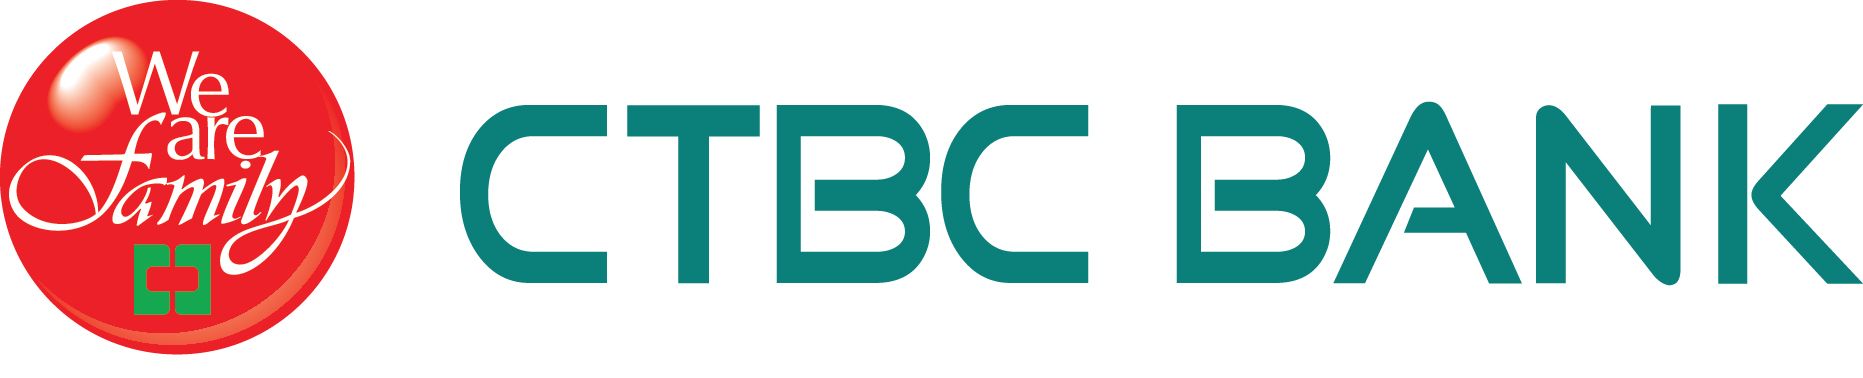 CTBC Bank Announces 